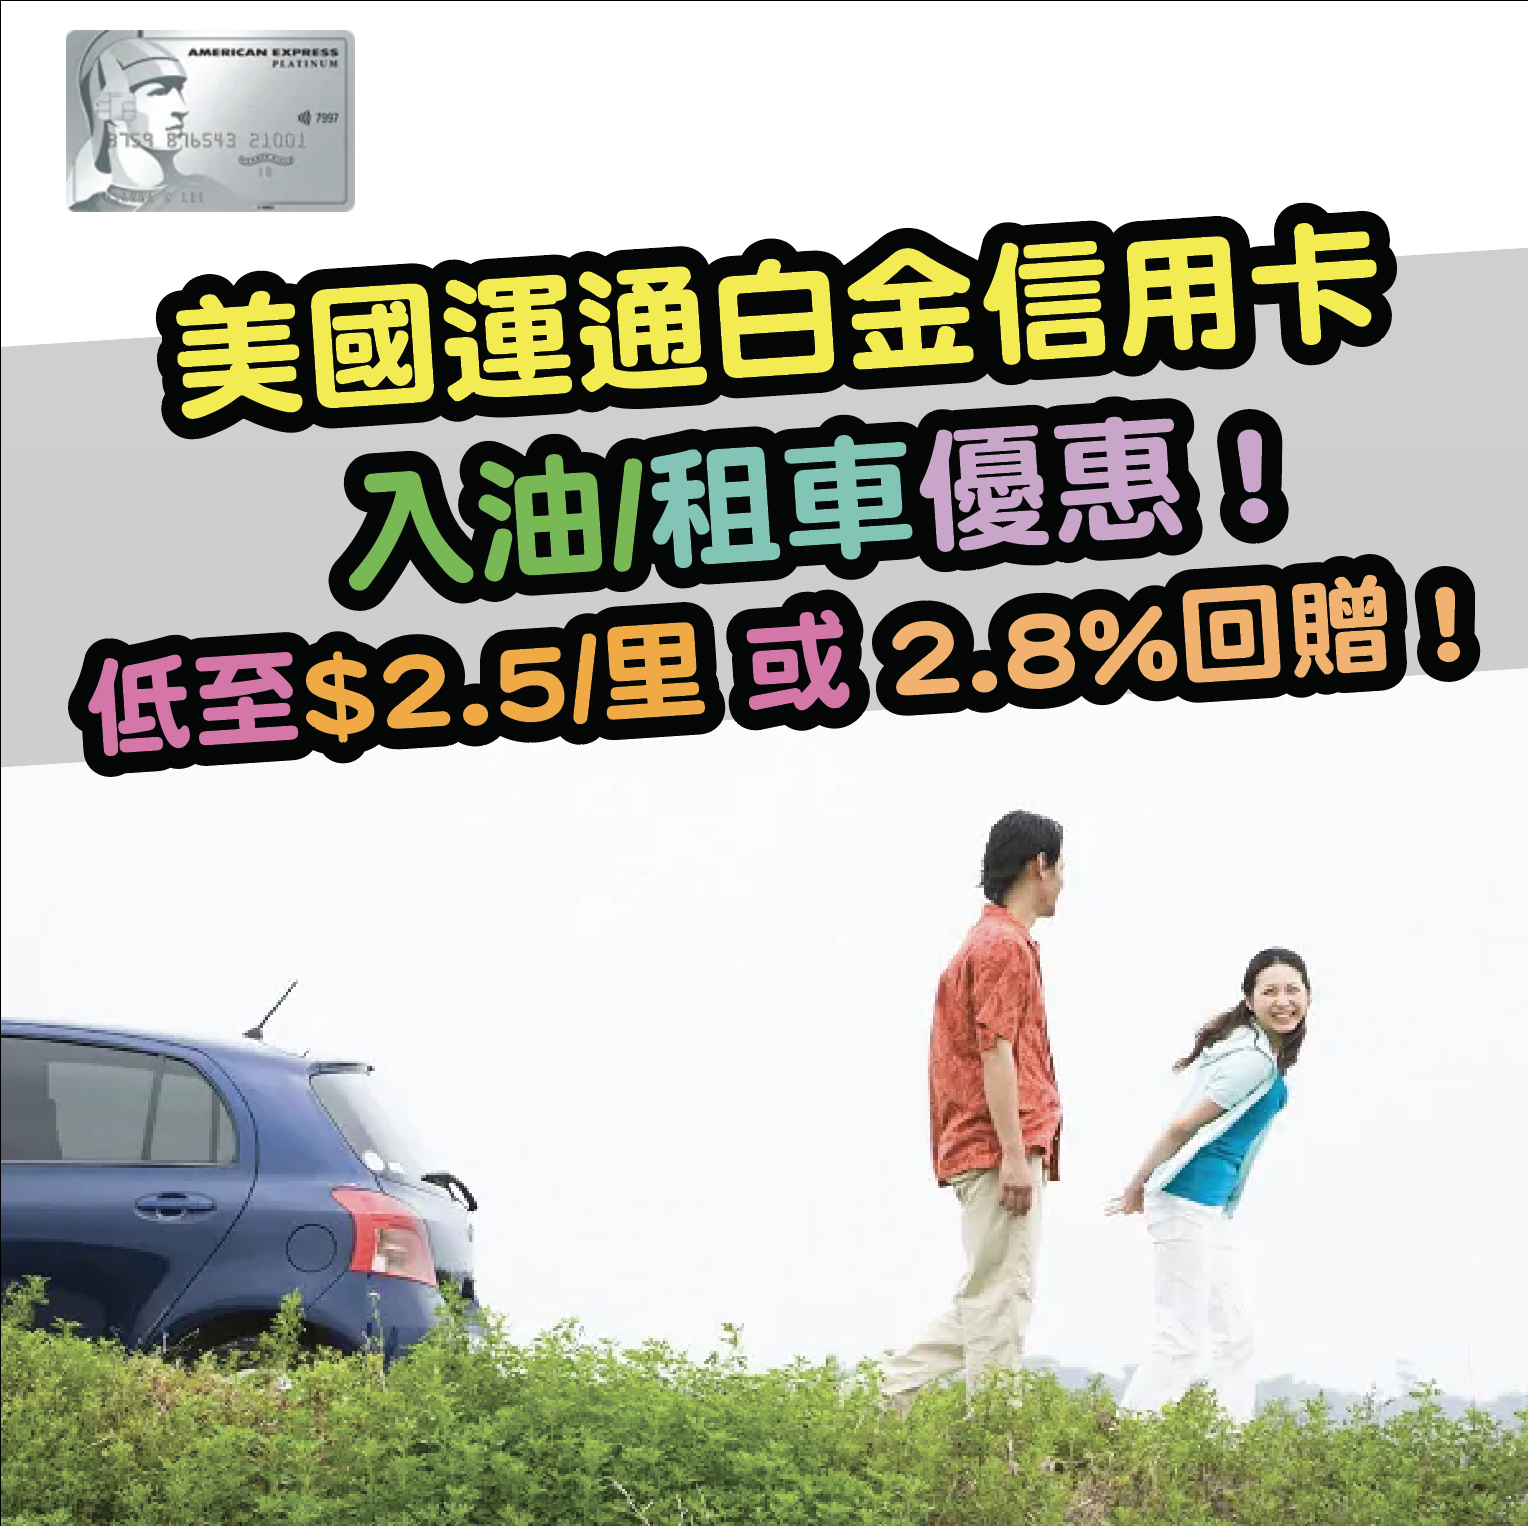 美國運通白金信用卡入油/租車優惠！每HK$1就有6積分！低至$2.5/里 或 2.8%回贈！